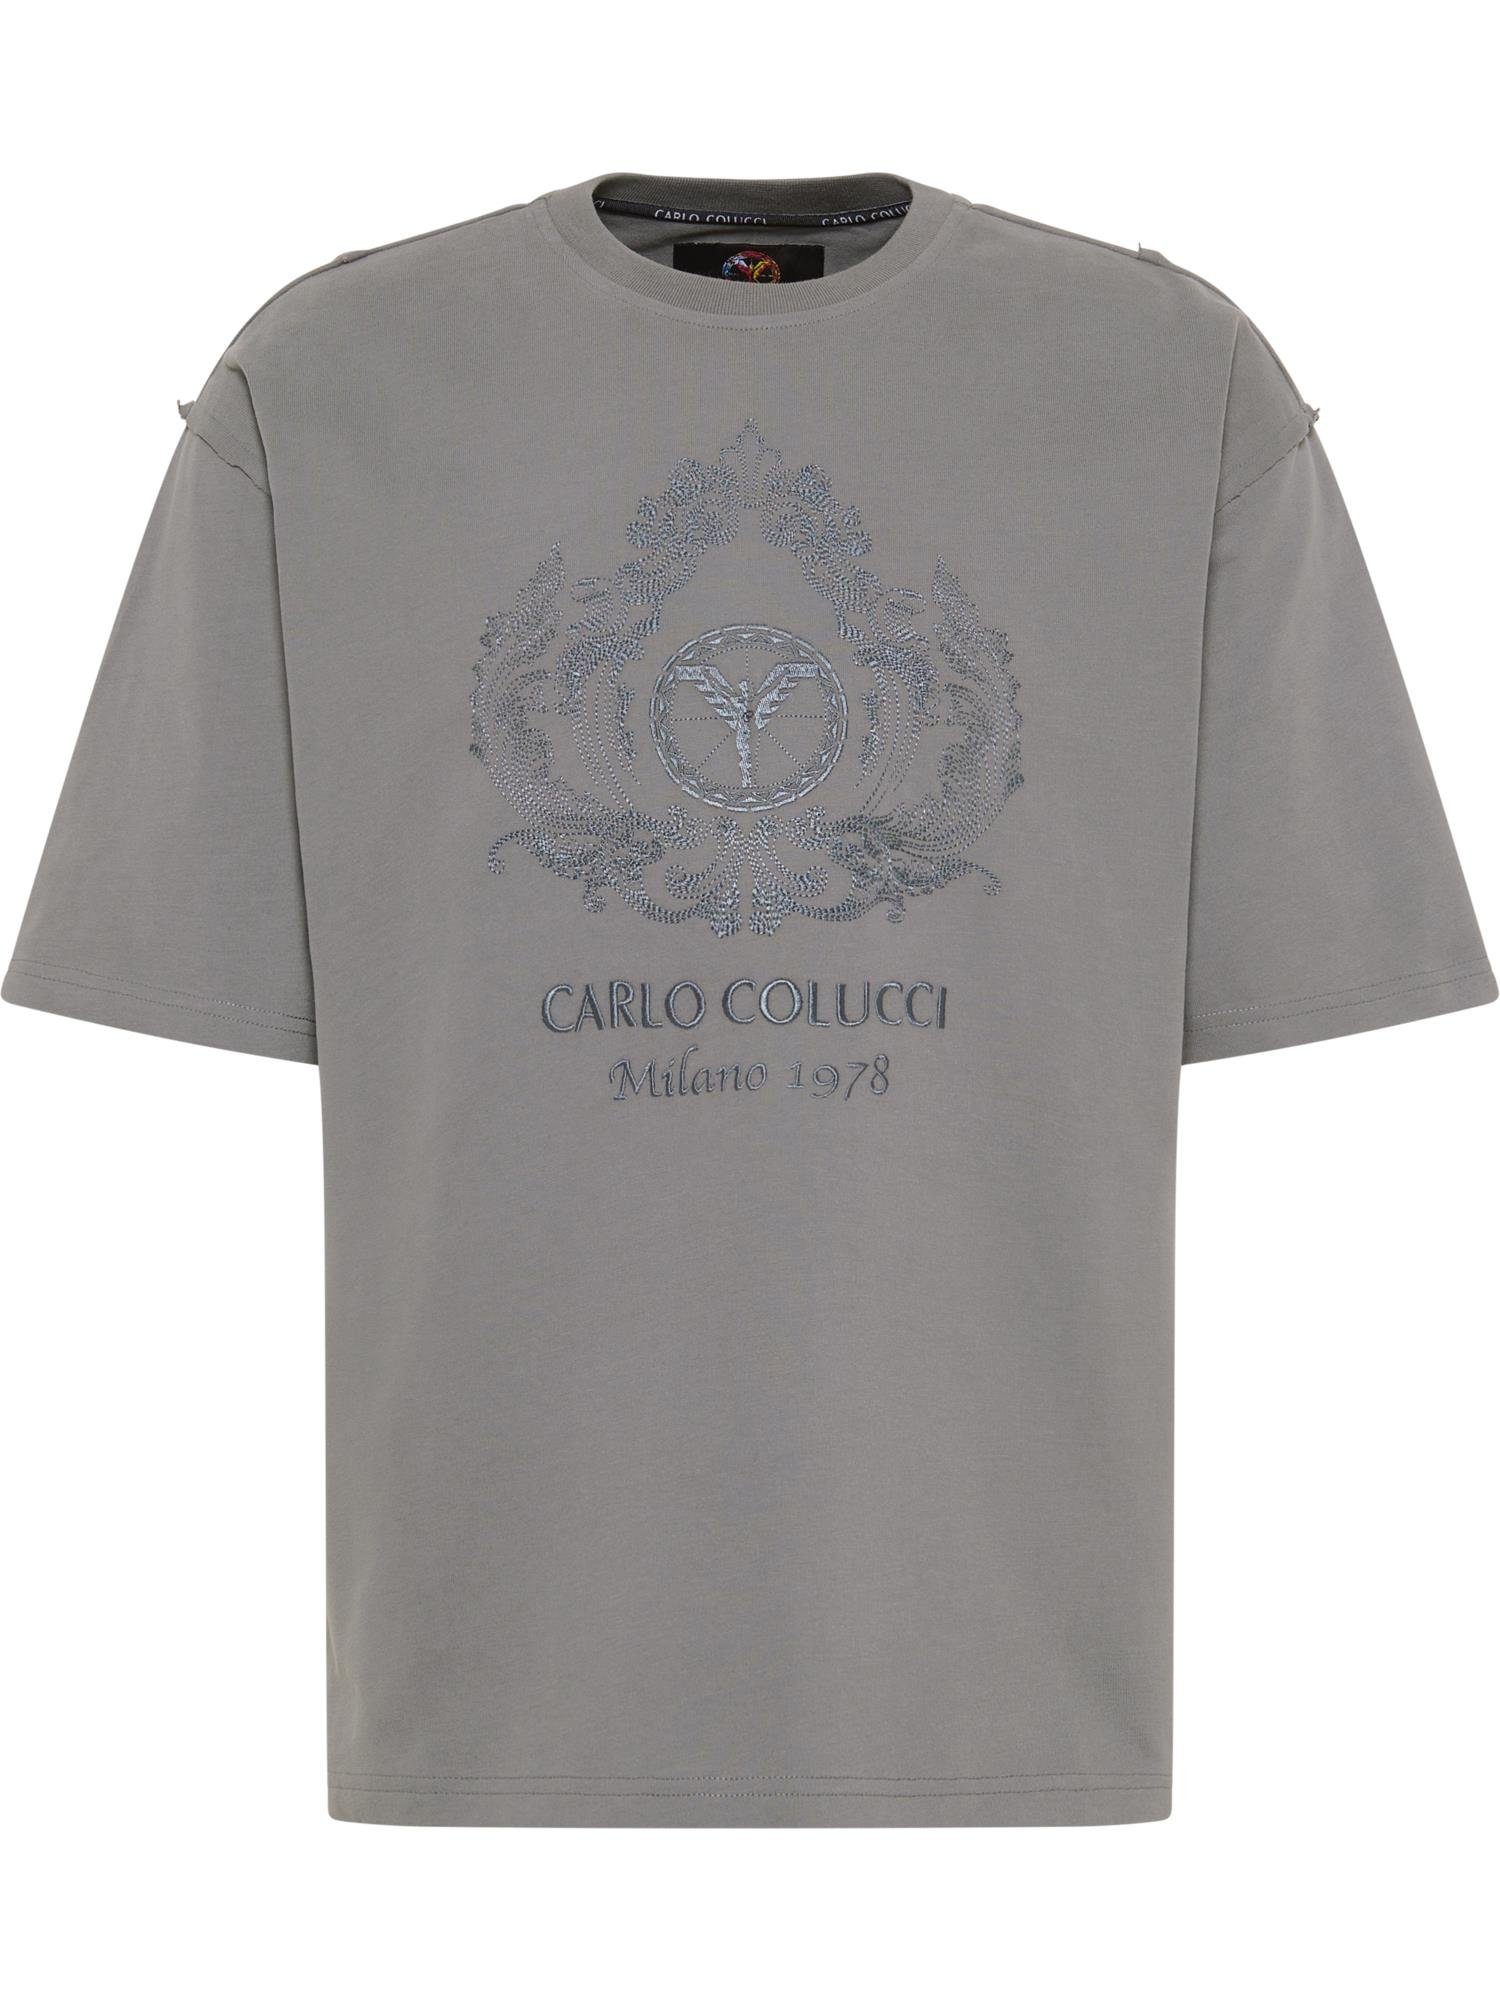 CARLO COLUCCI T-Shirt Anthrazit Bortoli De